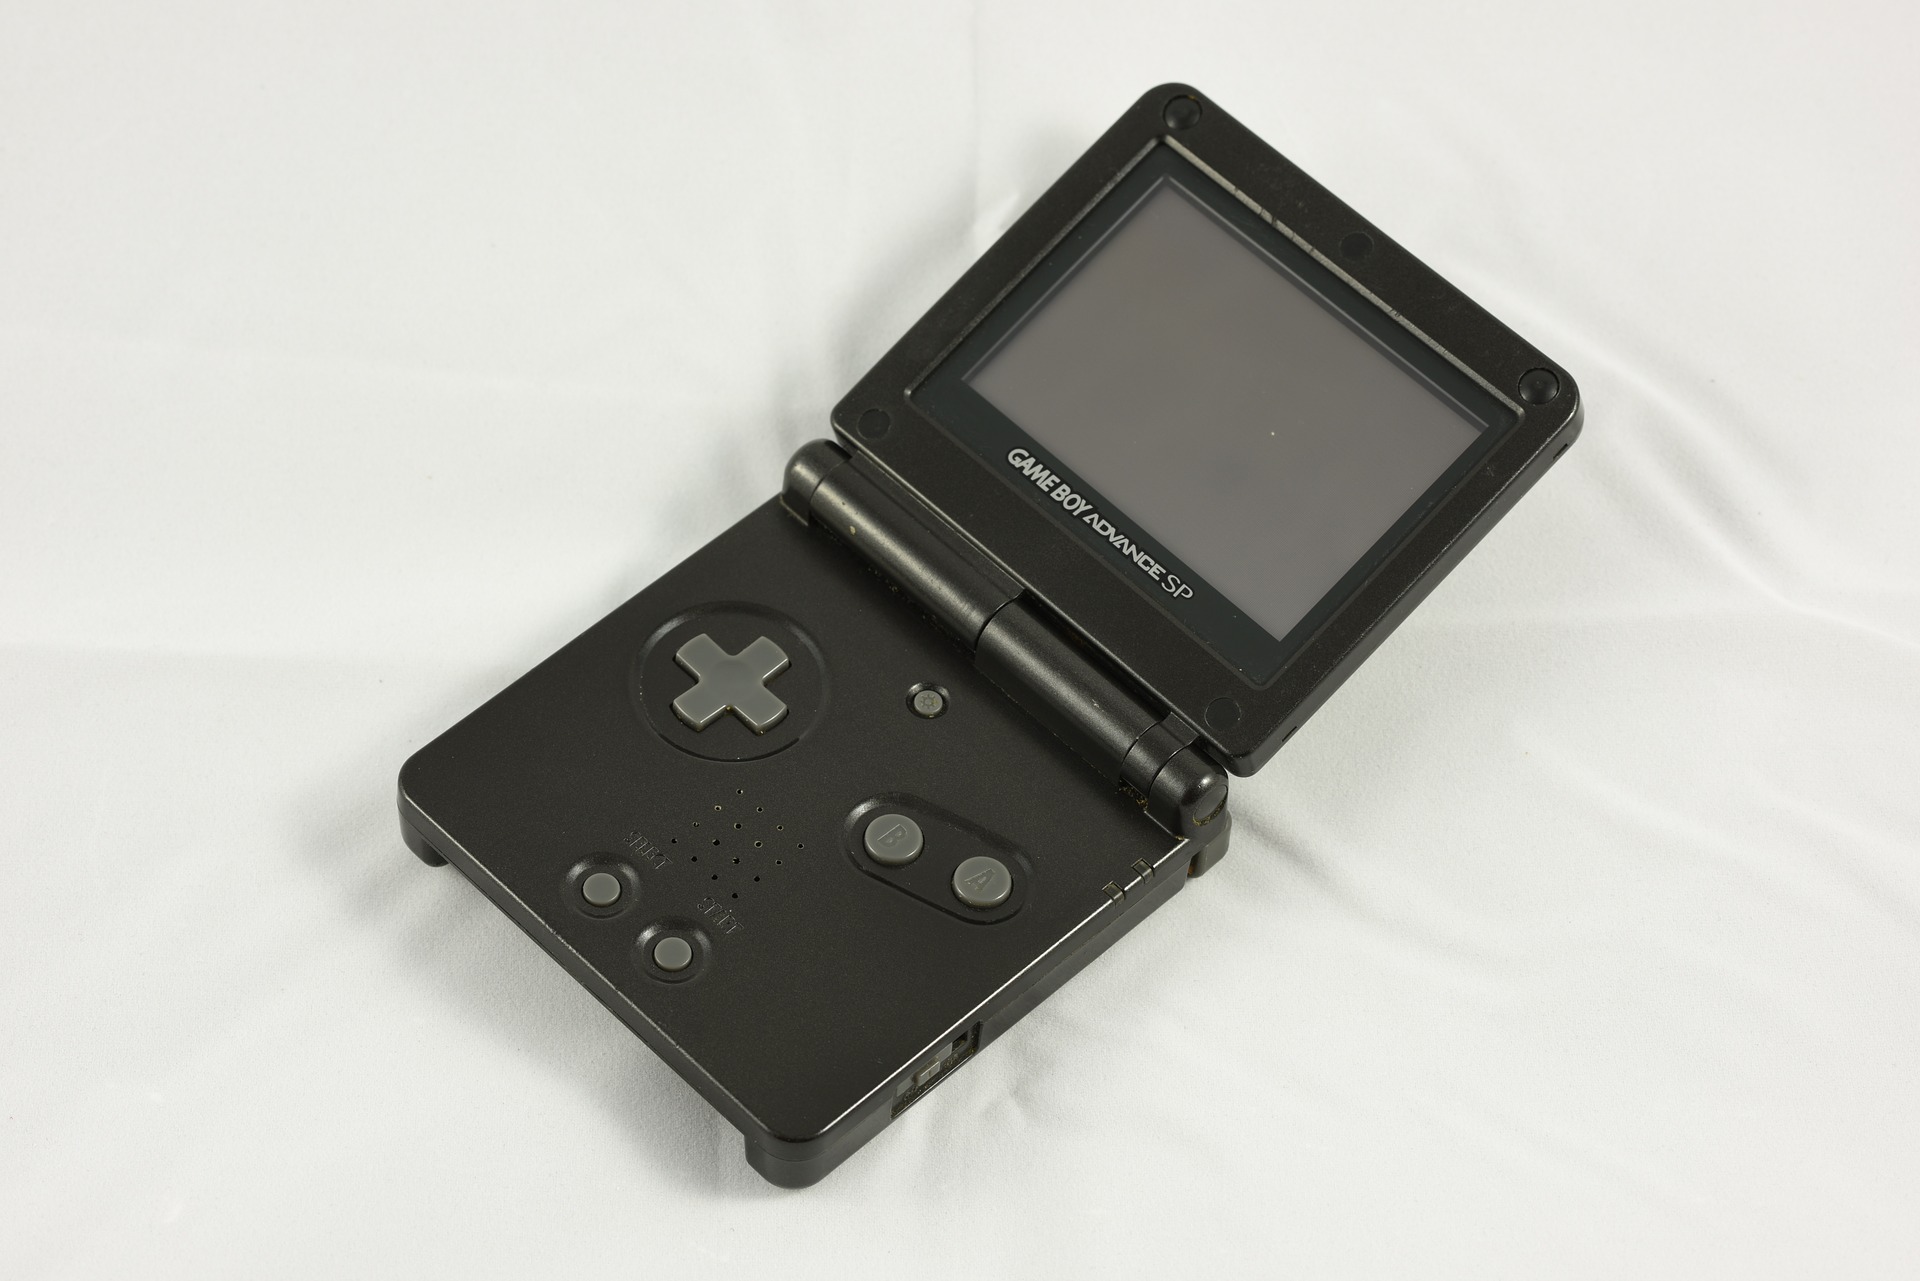 Nakon 14 godina od predstavljanja prvog Game Boya, predstavili su konačno model s osvijetljenim ekranom. Početkom 2003. godine, predstavljen je nasljednik Advancea, Game Boy Advance SP. Osim što je osvijetljeni ekran konačno bio dostupan na nekom Game Boyu van Japana, oblik se promijenio u sklopivi, poput tadašnjih mobitela. SP je također podržavao stare Game Boy igre, kao i obični Advance. SP je umjesto klasičnih AA baterija imao integriranu Litij-ionsku bateriju, koju se trebalo puniti posebnim Nintendovim punjačem, a autonomija igranja je iznosila otprilike desetak sati.